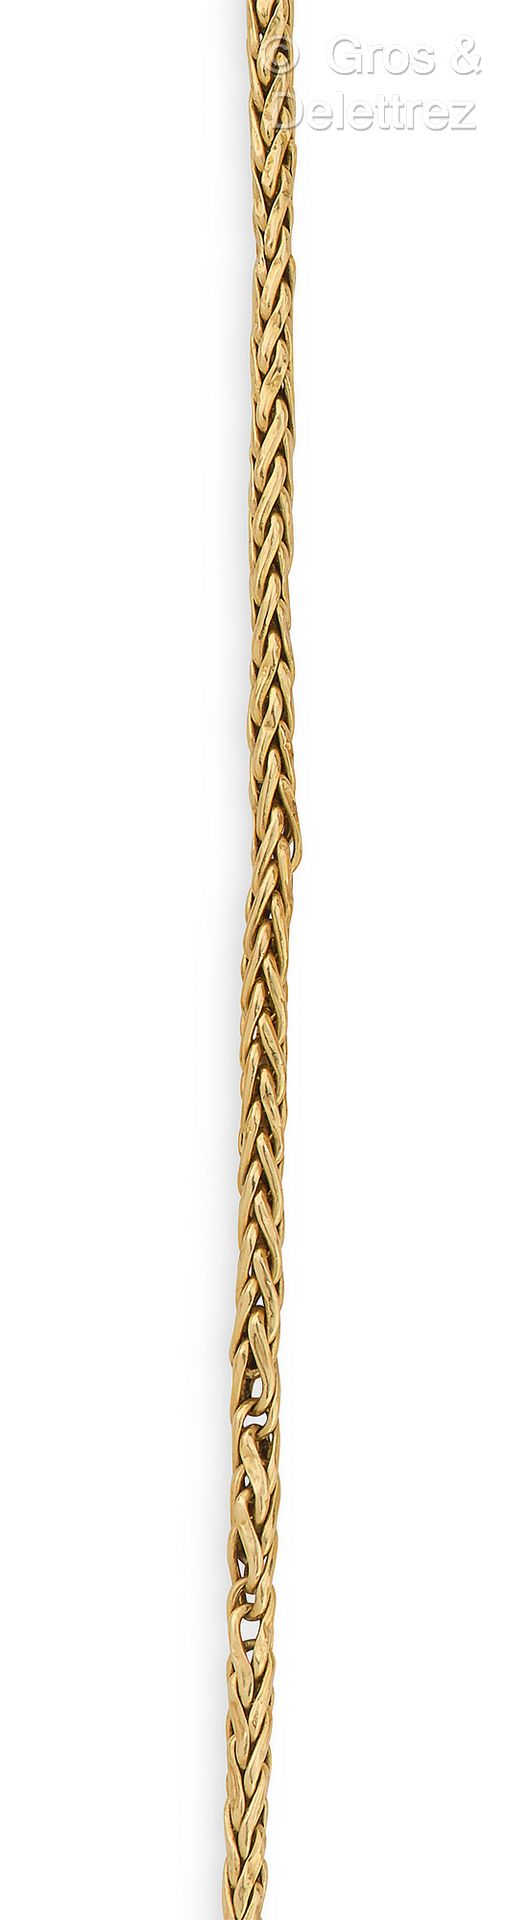 Null 黄金手镯，由柱状链接组成。扣子不见了。长度：17厘米。毛重：3.7克。